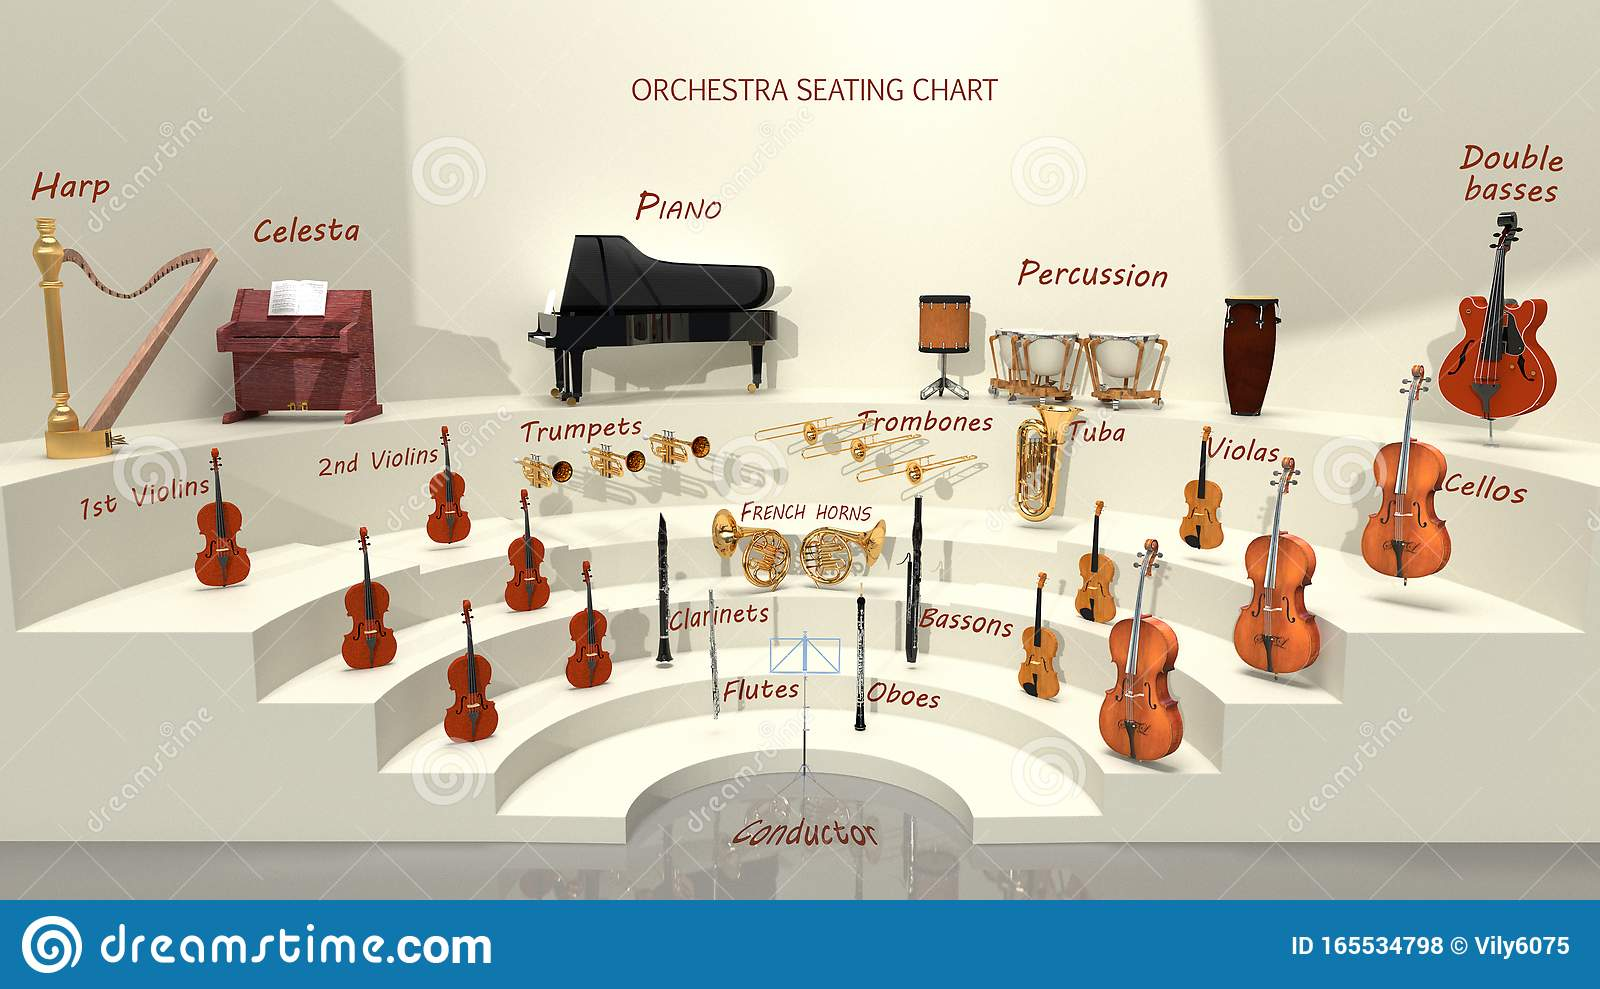 西洋乐队的乐器分布图图片